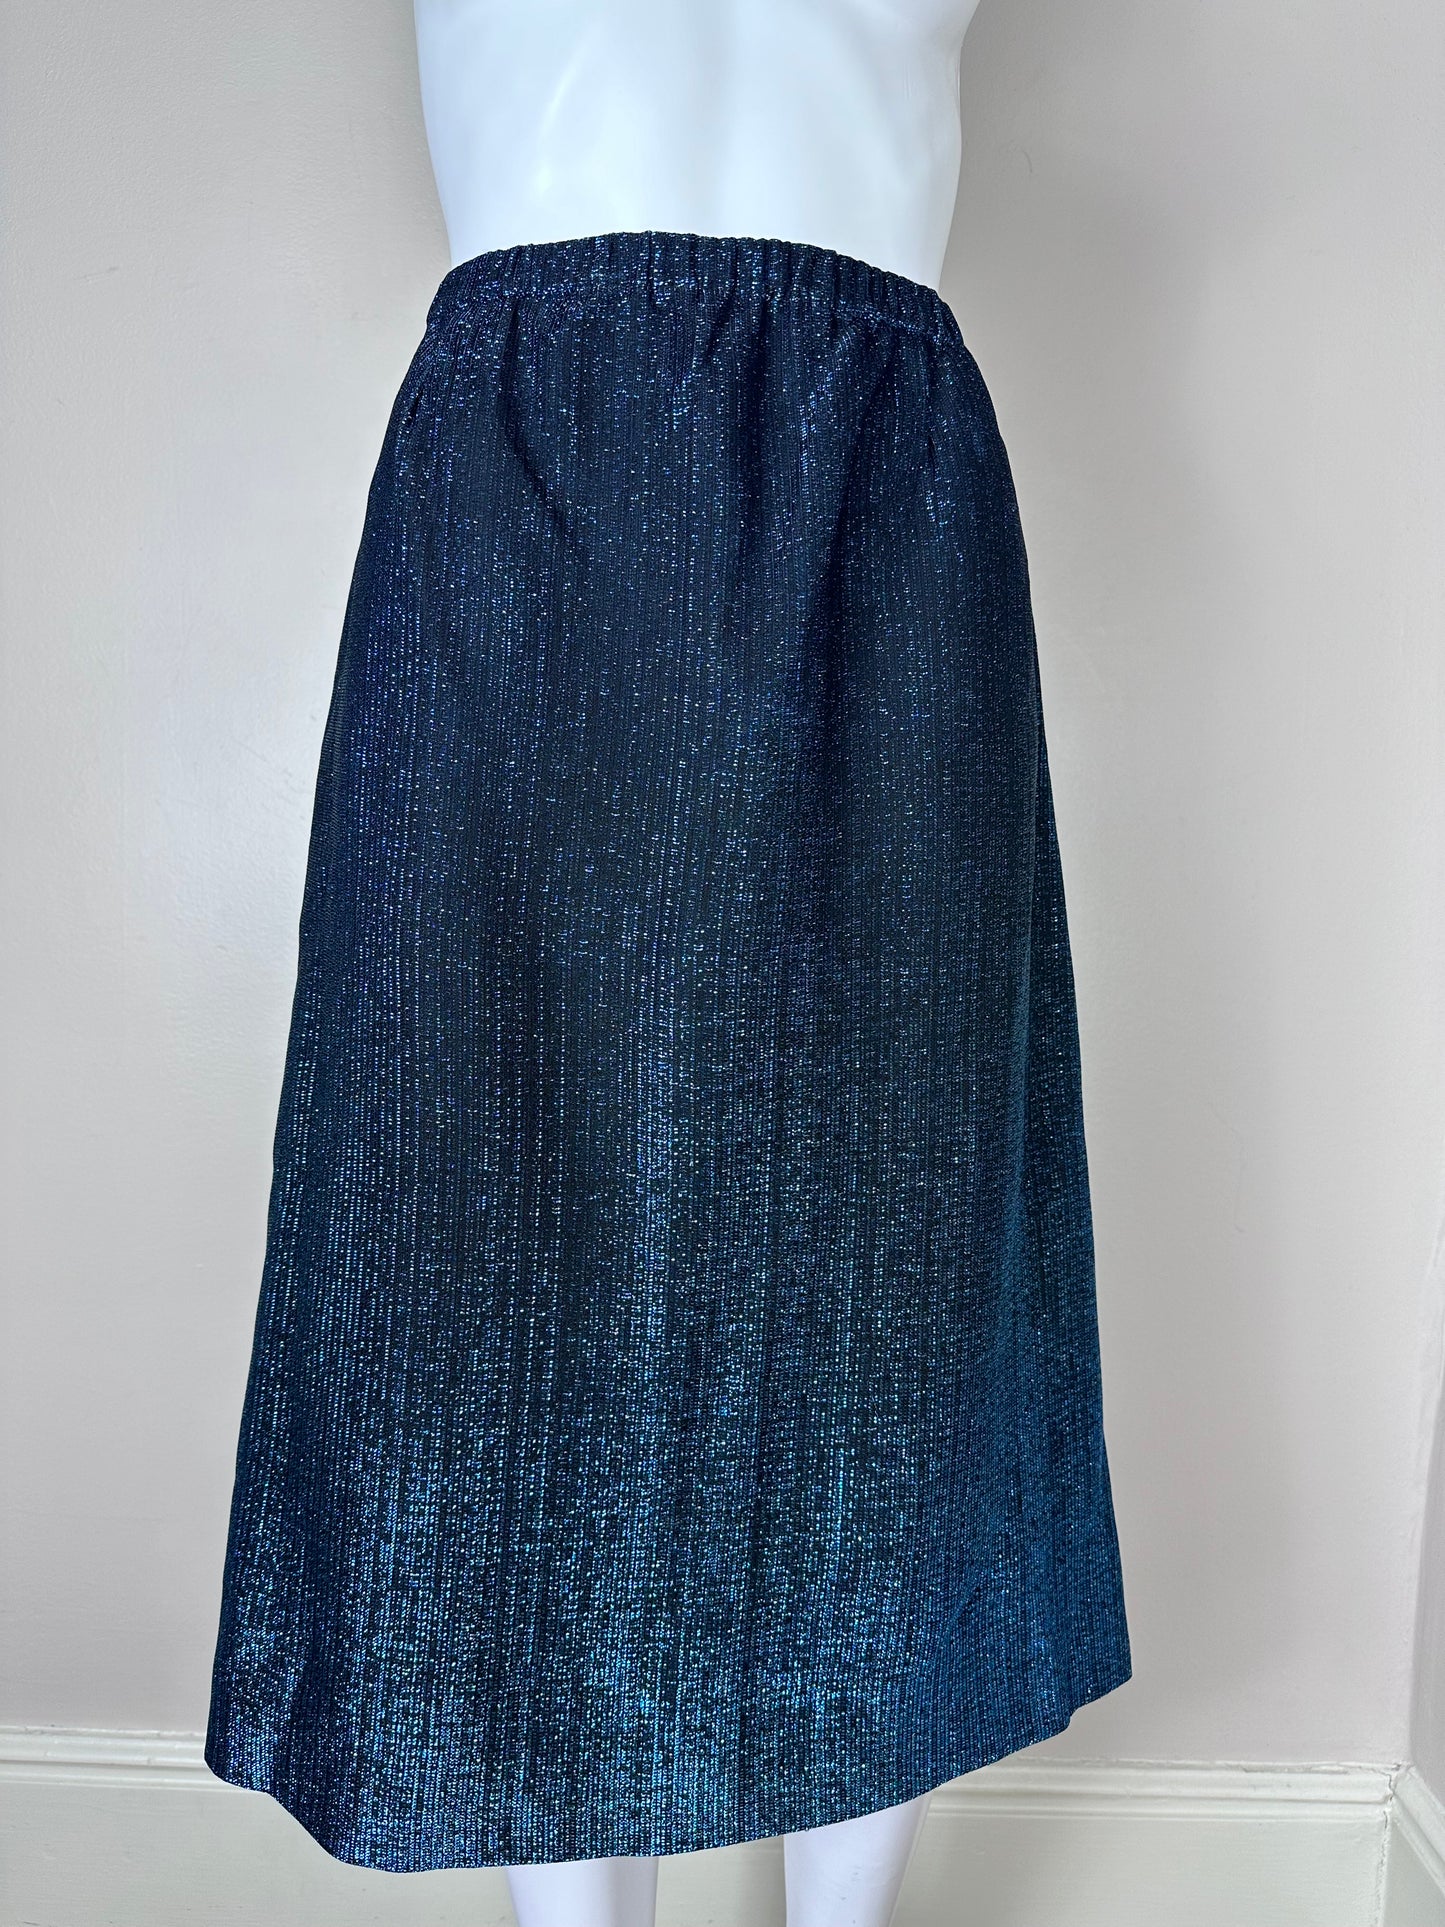 1960s Blue Lurex Suit, Size Medium-Large, 3 Piece Set, Top, Skirt, Jacket